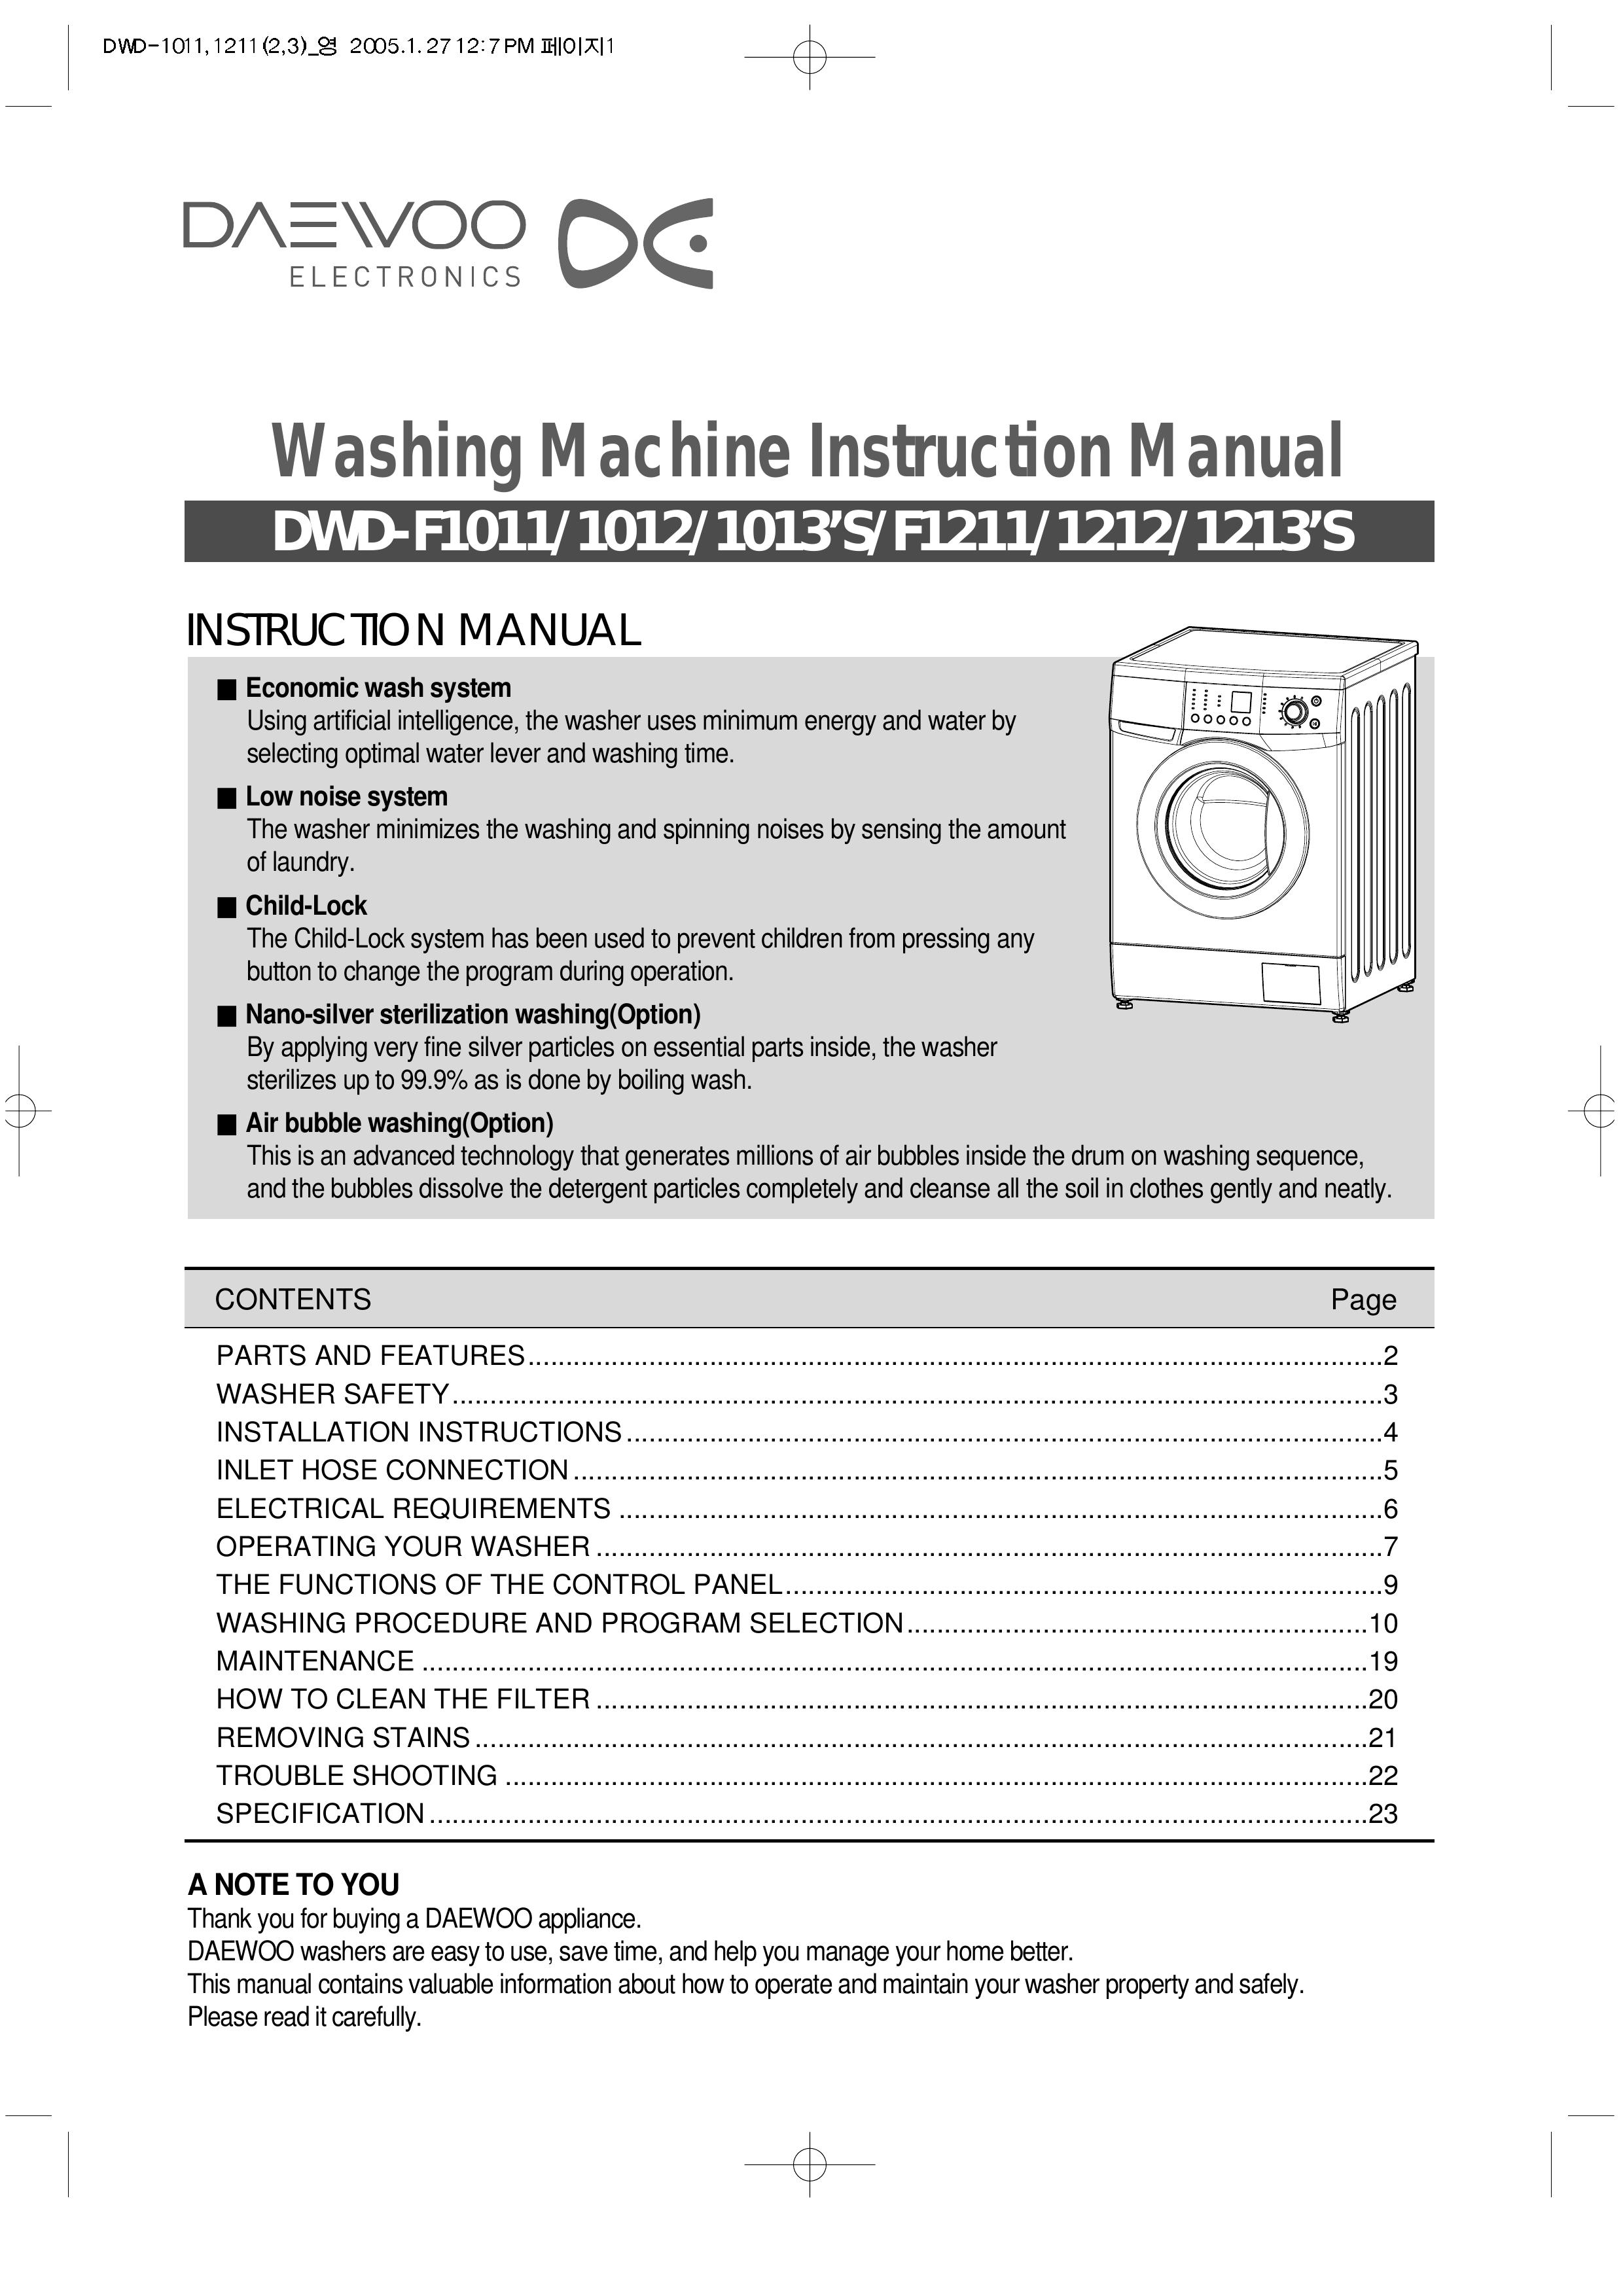 Daewoo DWD-F1213'S Washer User Manual